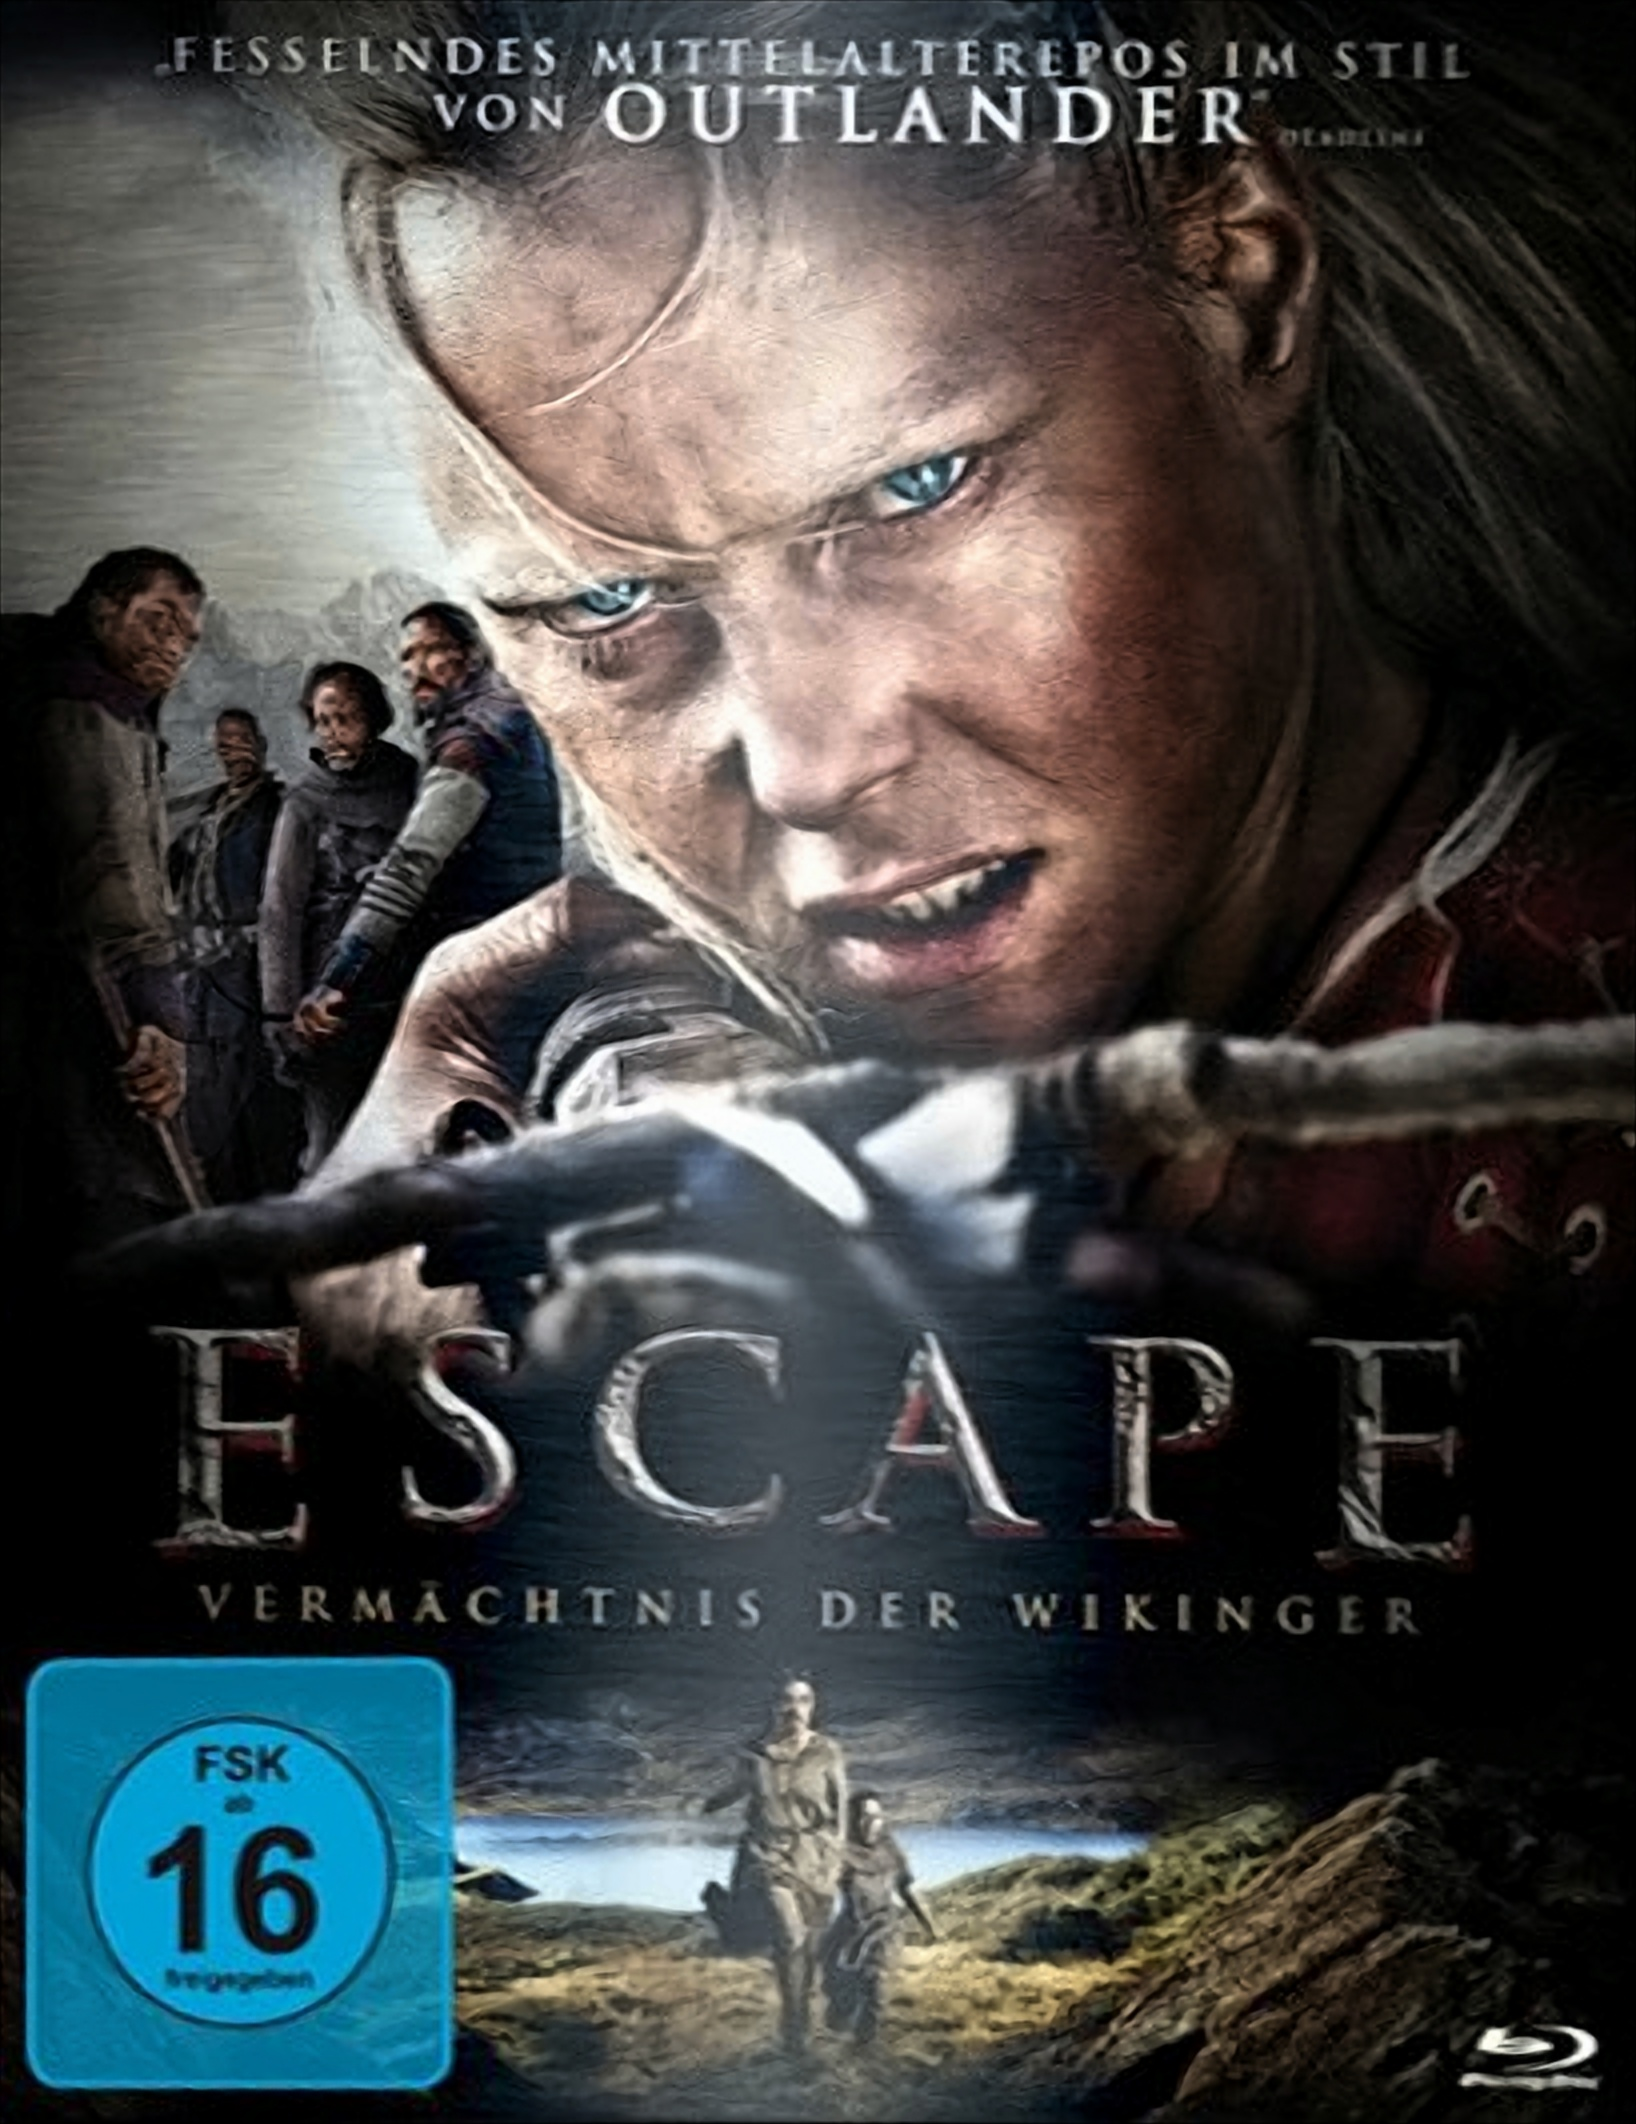 Escape - Wikinger Blu-ray (Steelbook) der Vermächtnis